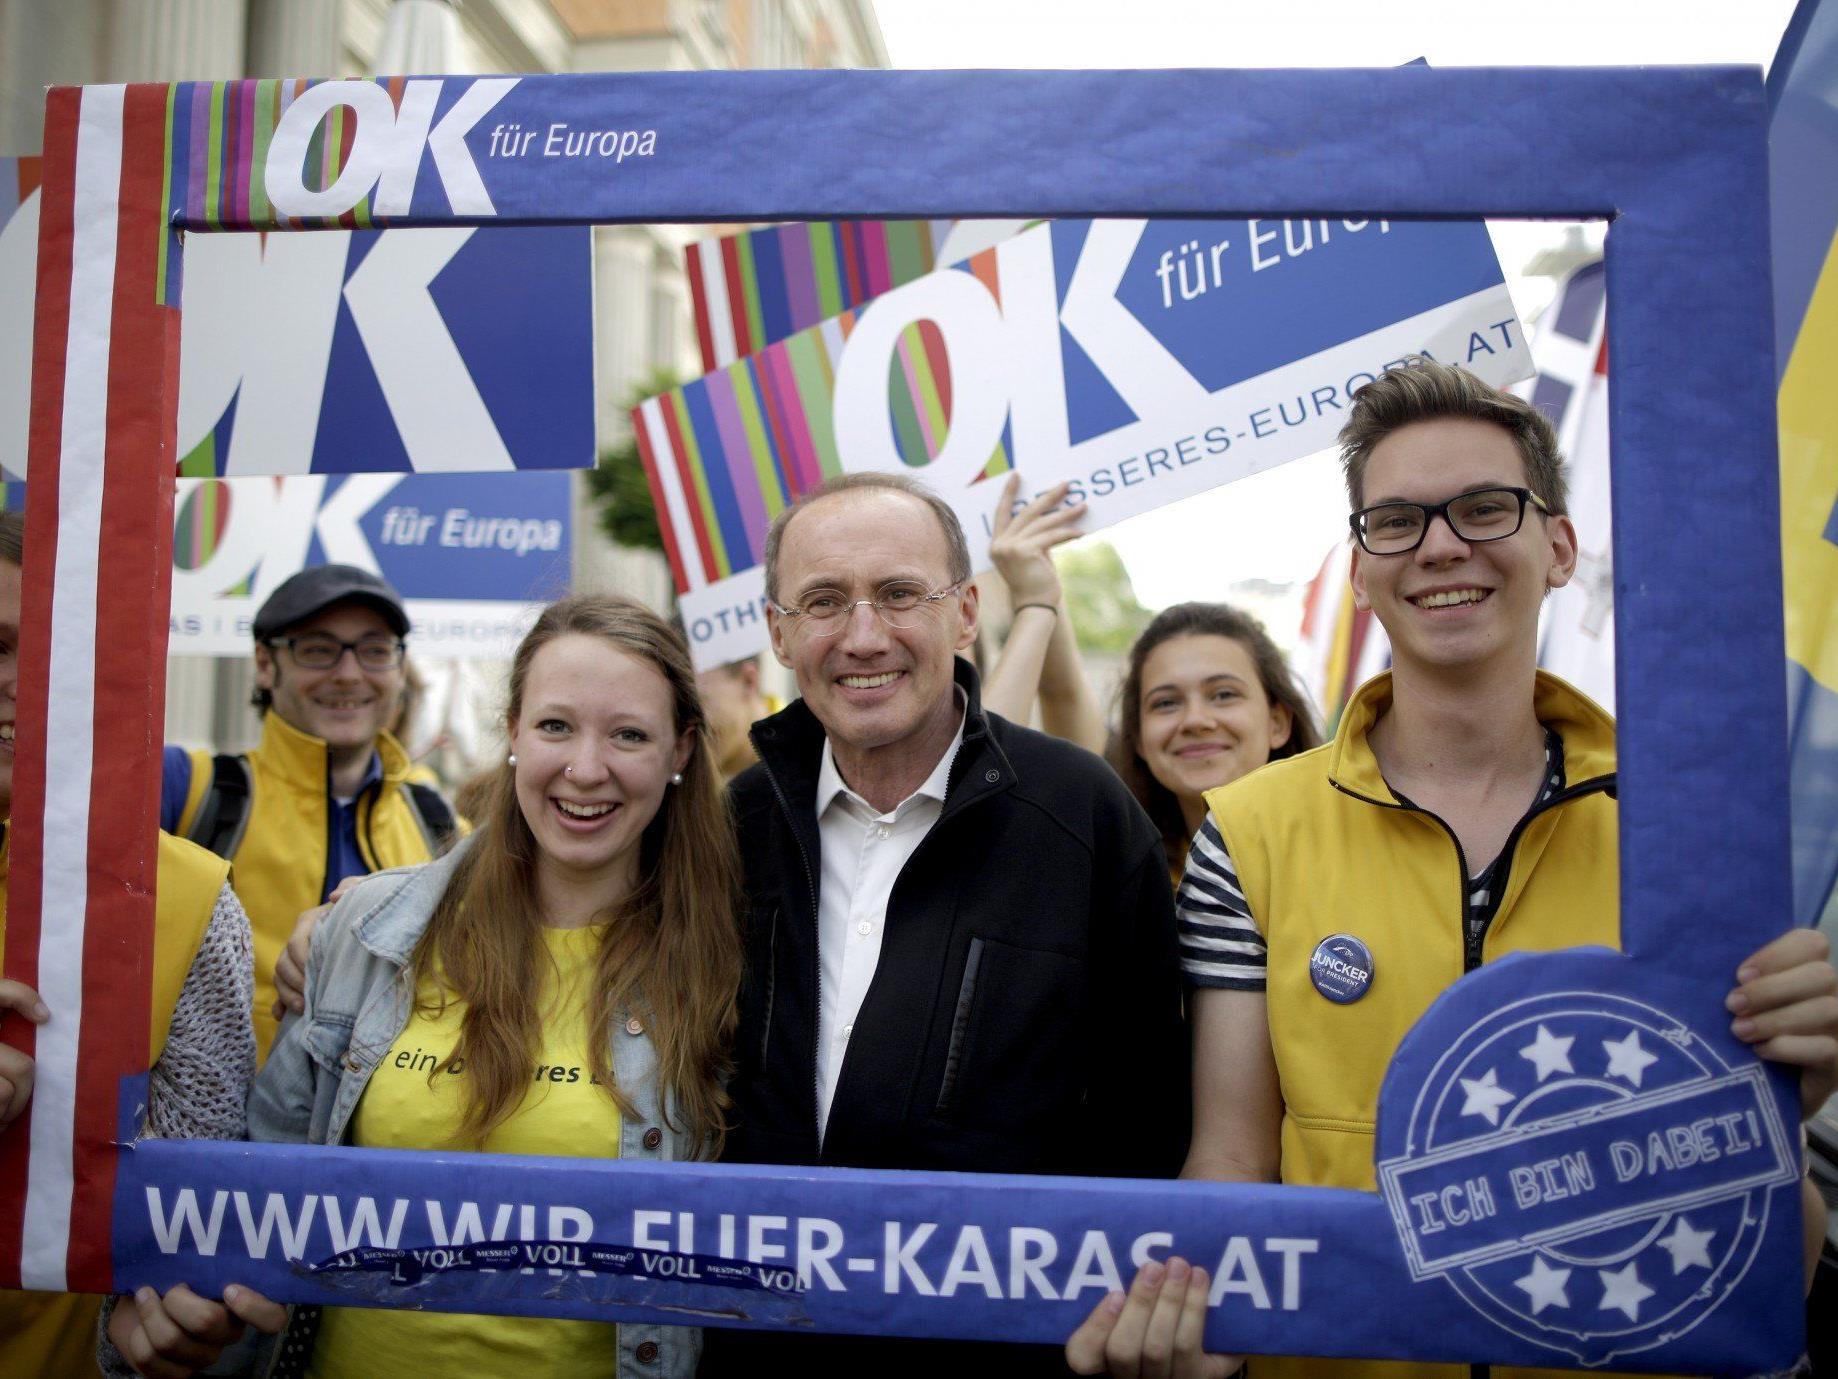 Othmar Karas geht oprimistisch die Europawahl am Sonntag.